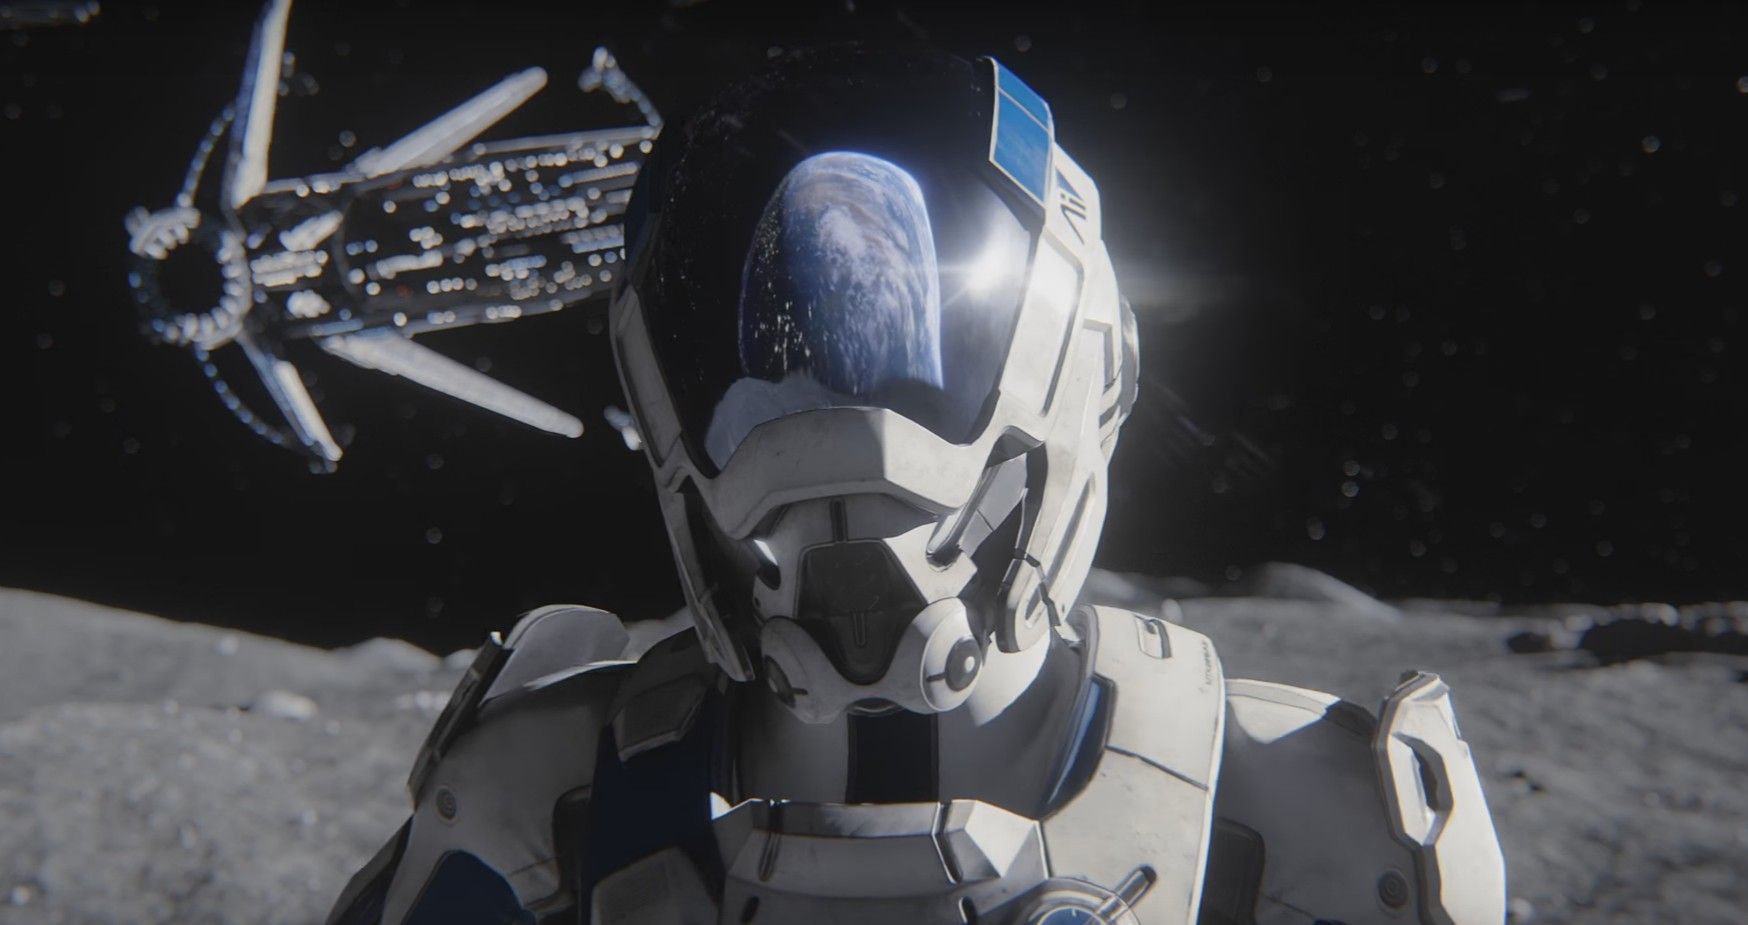 Nuove informazioni sul sistema di customizzazione di Mass Effect Andromeda